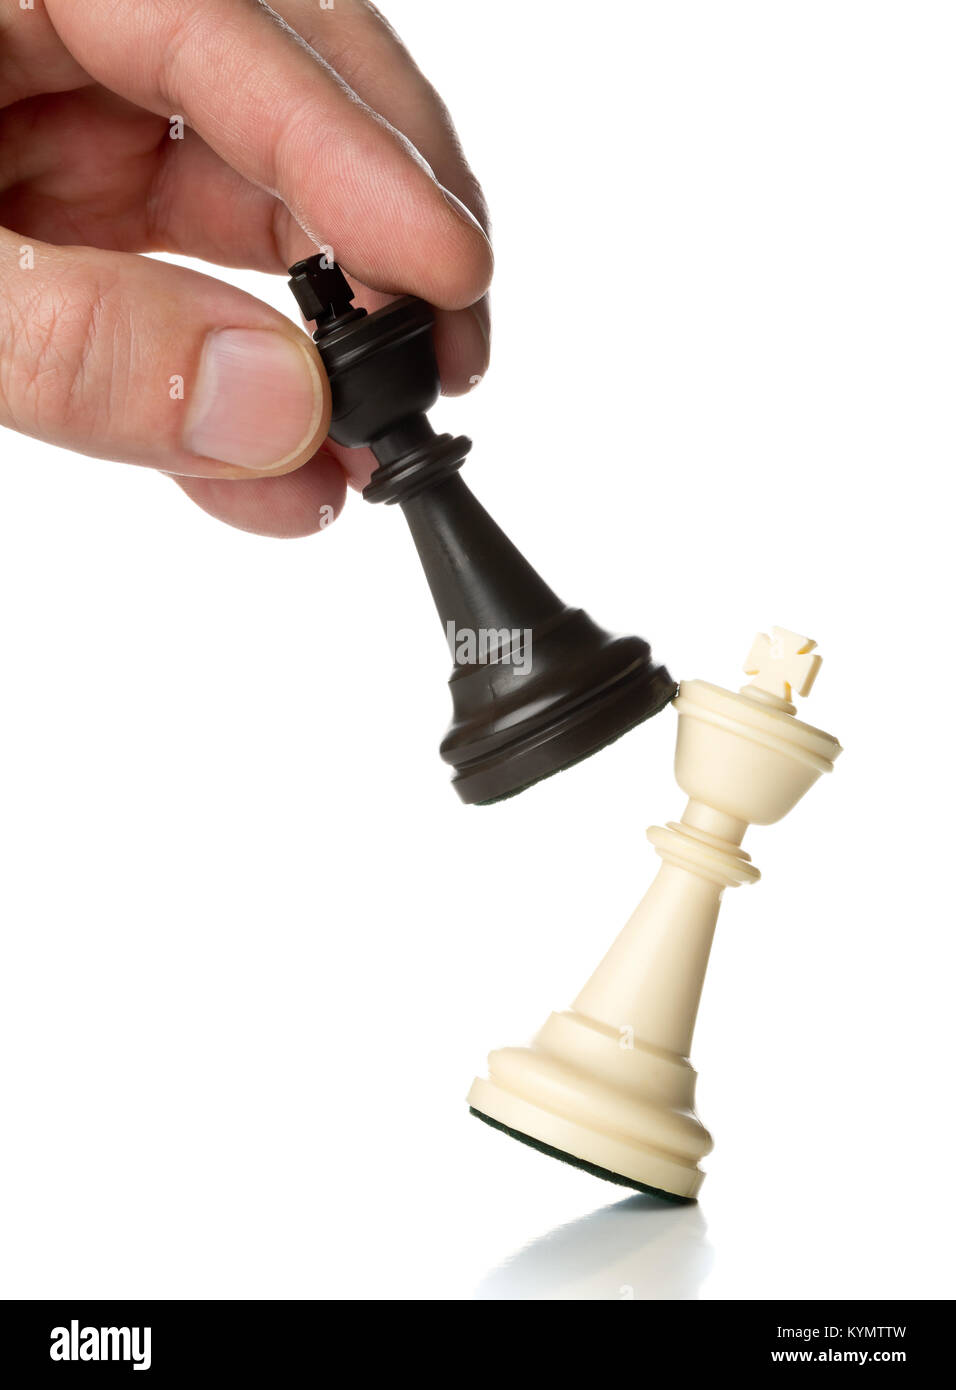 Manager Klopfen über einer Chess king Abbildung mit einem anderen König Schach Abbildung - Führung, Übernahme, Förderung oder Strategie Konzept auf weißem Hintergrund Stockfoto